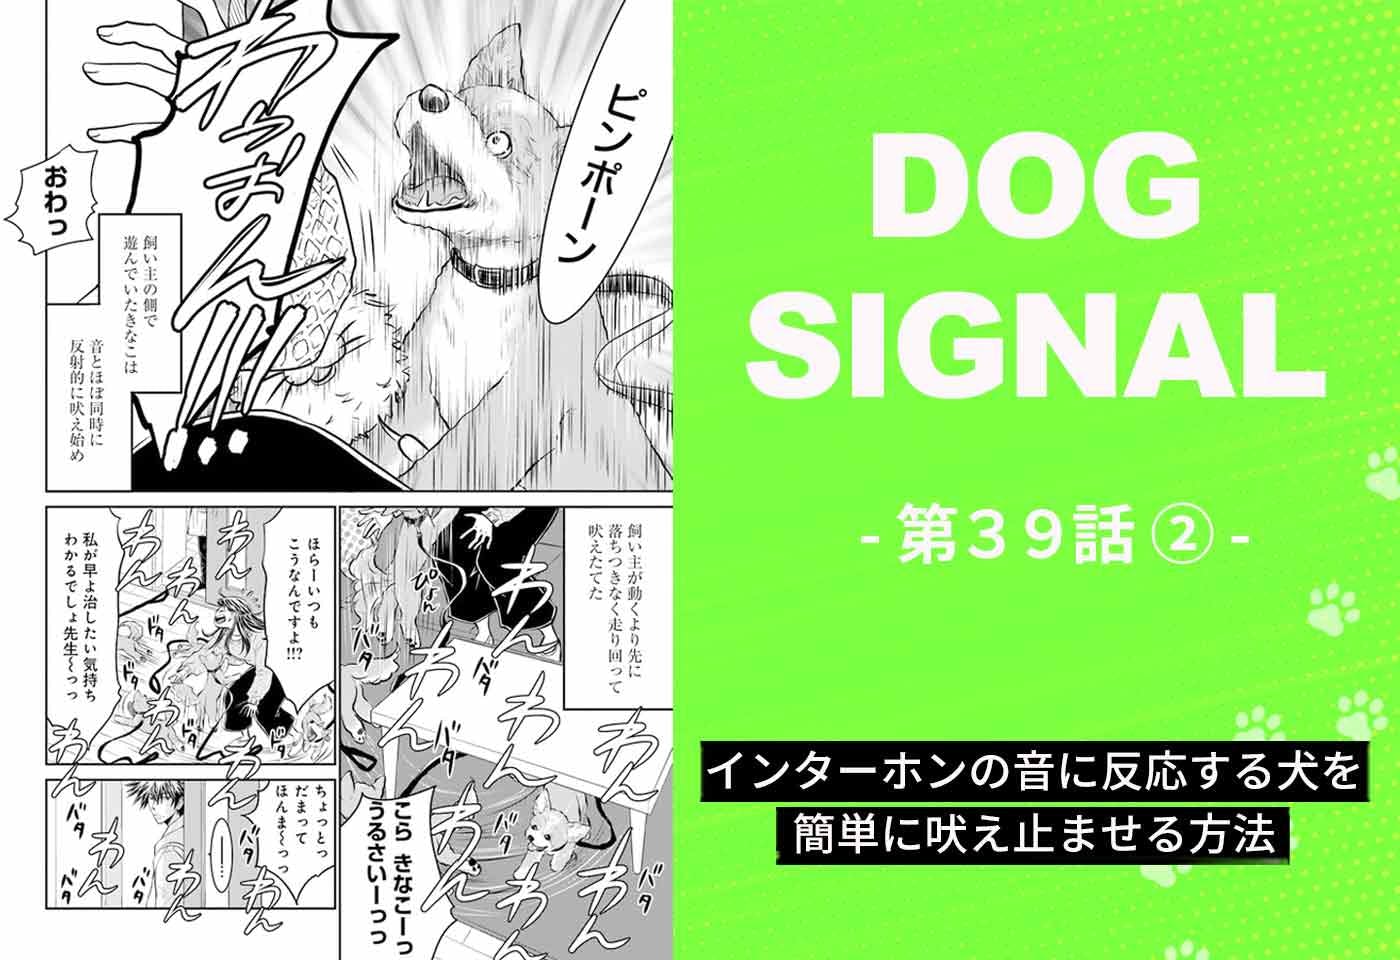 『DOG SIGNAL』39話目2/4　簡単に愛犬のインターホン吠えを止める方法